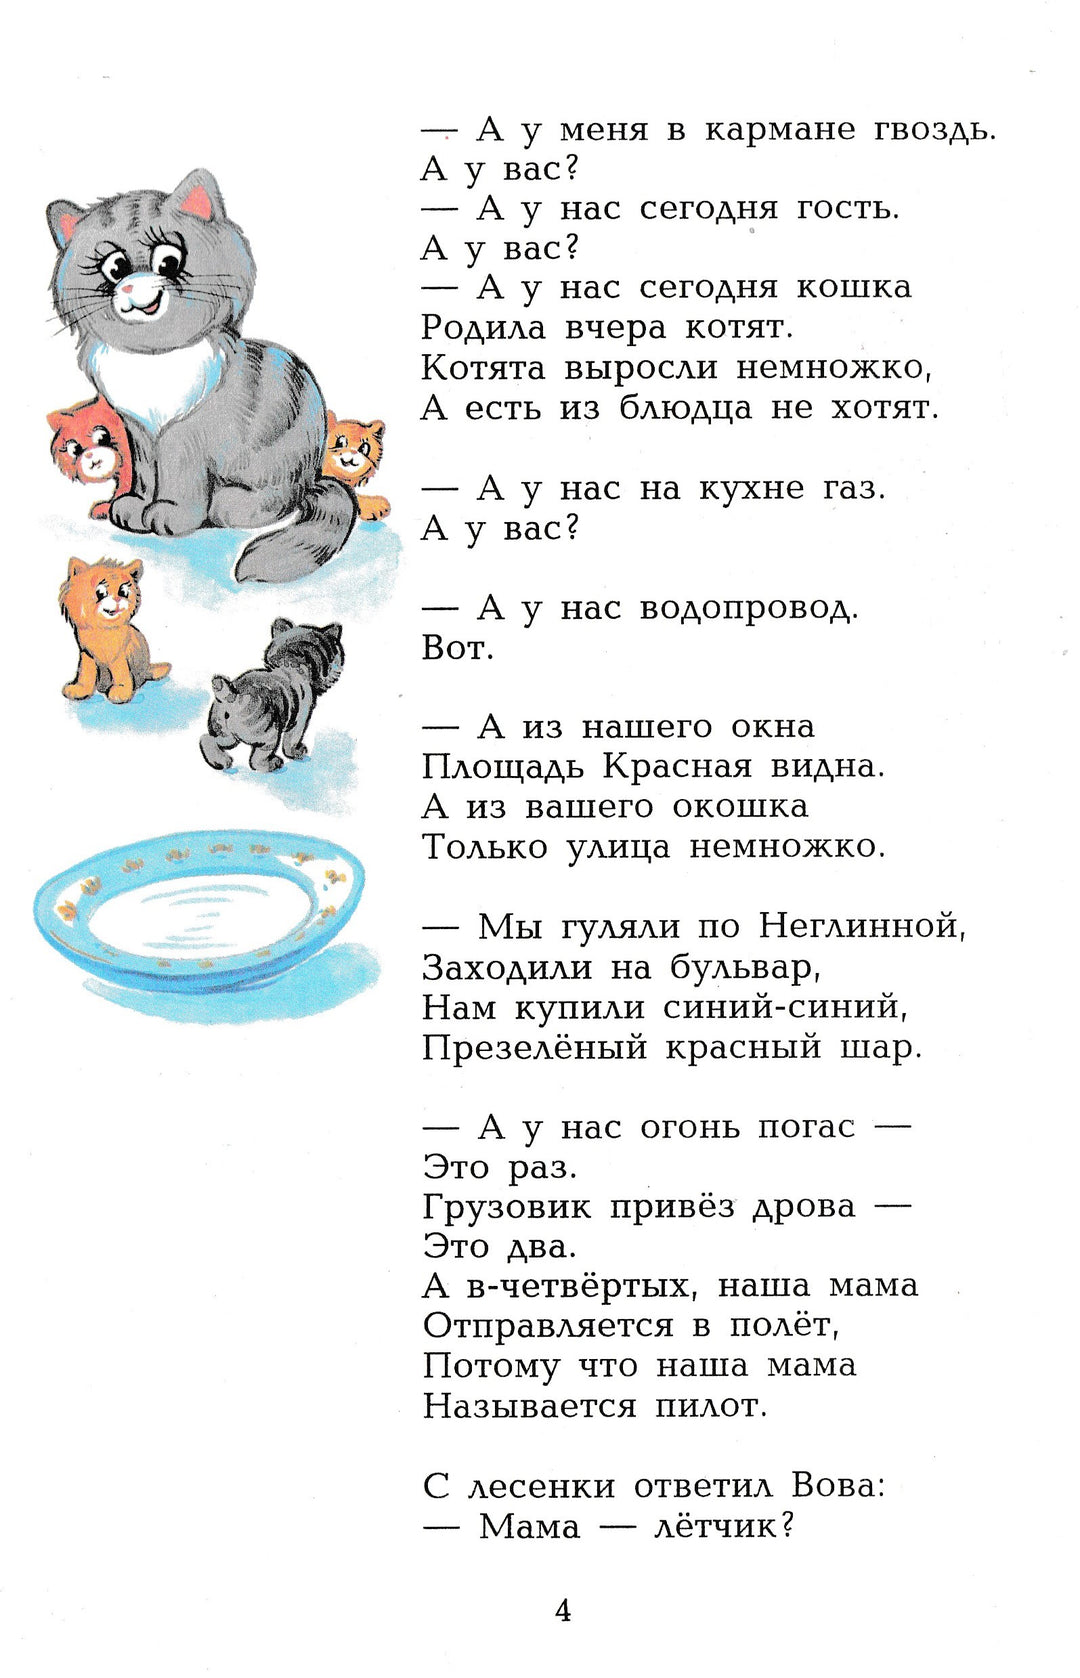 С. Михалков: Мы едем, едем, едем... Стихи для детей-Михалков С.-Самовар-Lookomorie